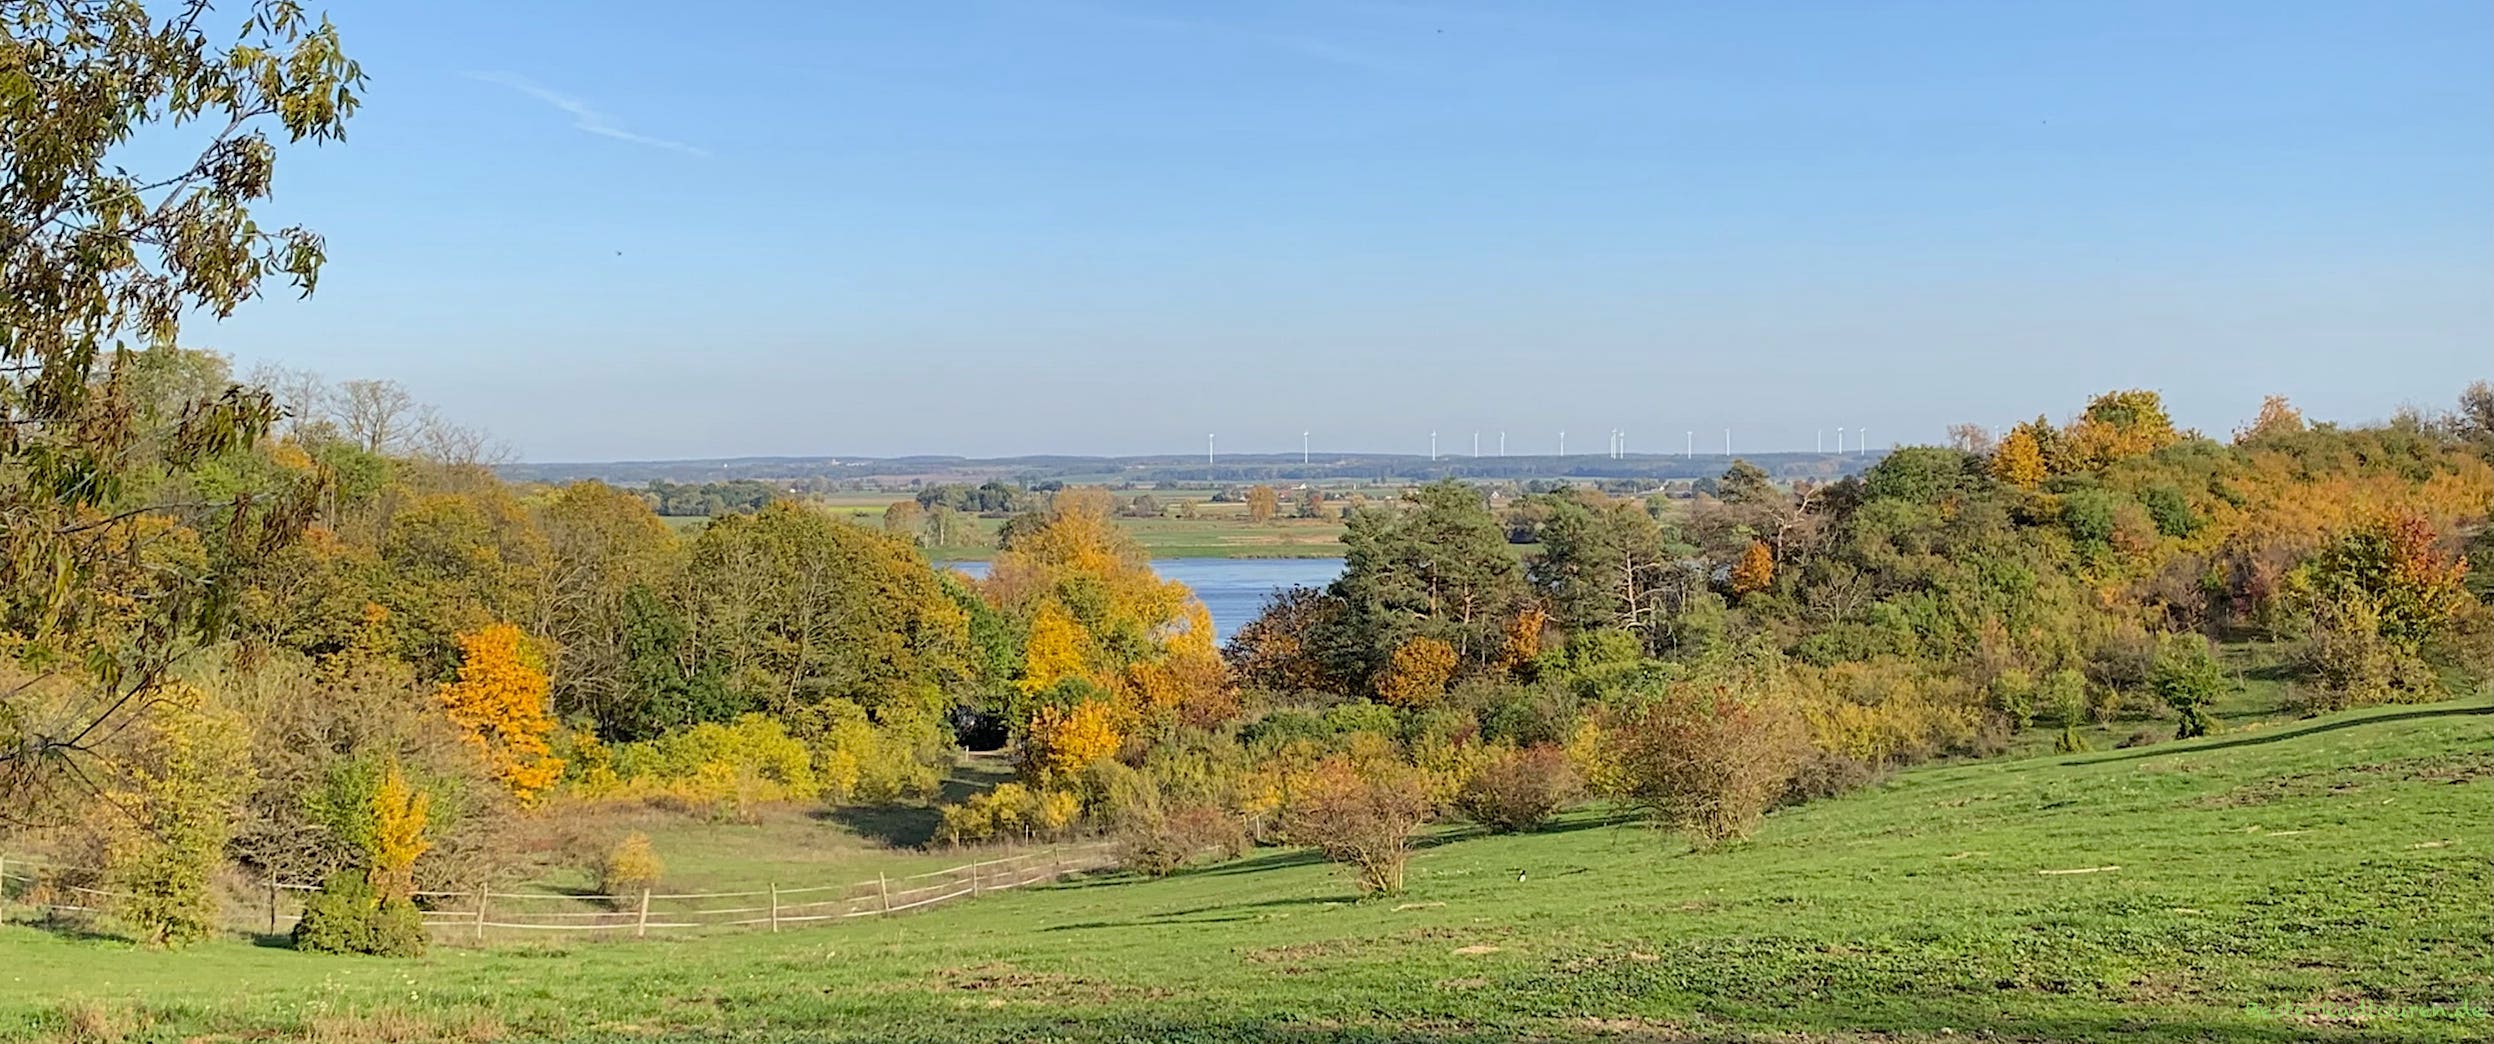 Oberhalb von Lebus: Aussicht vom Oderradweg auf die Oder-Landschaft und das Flussbett